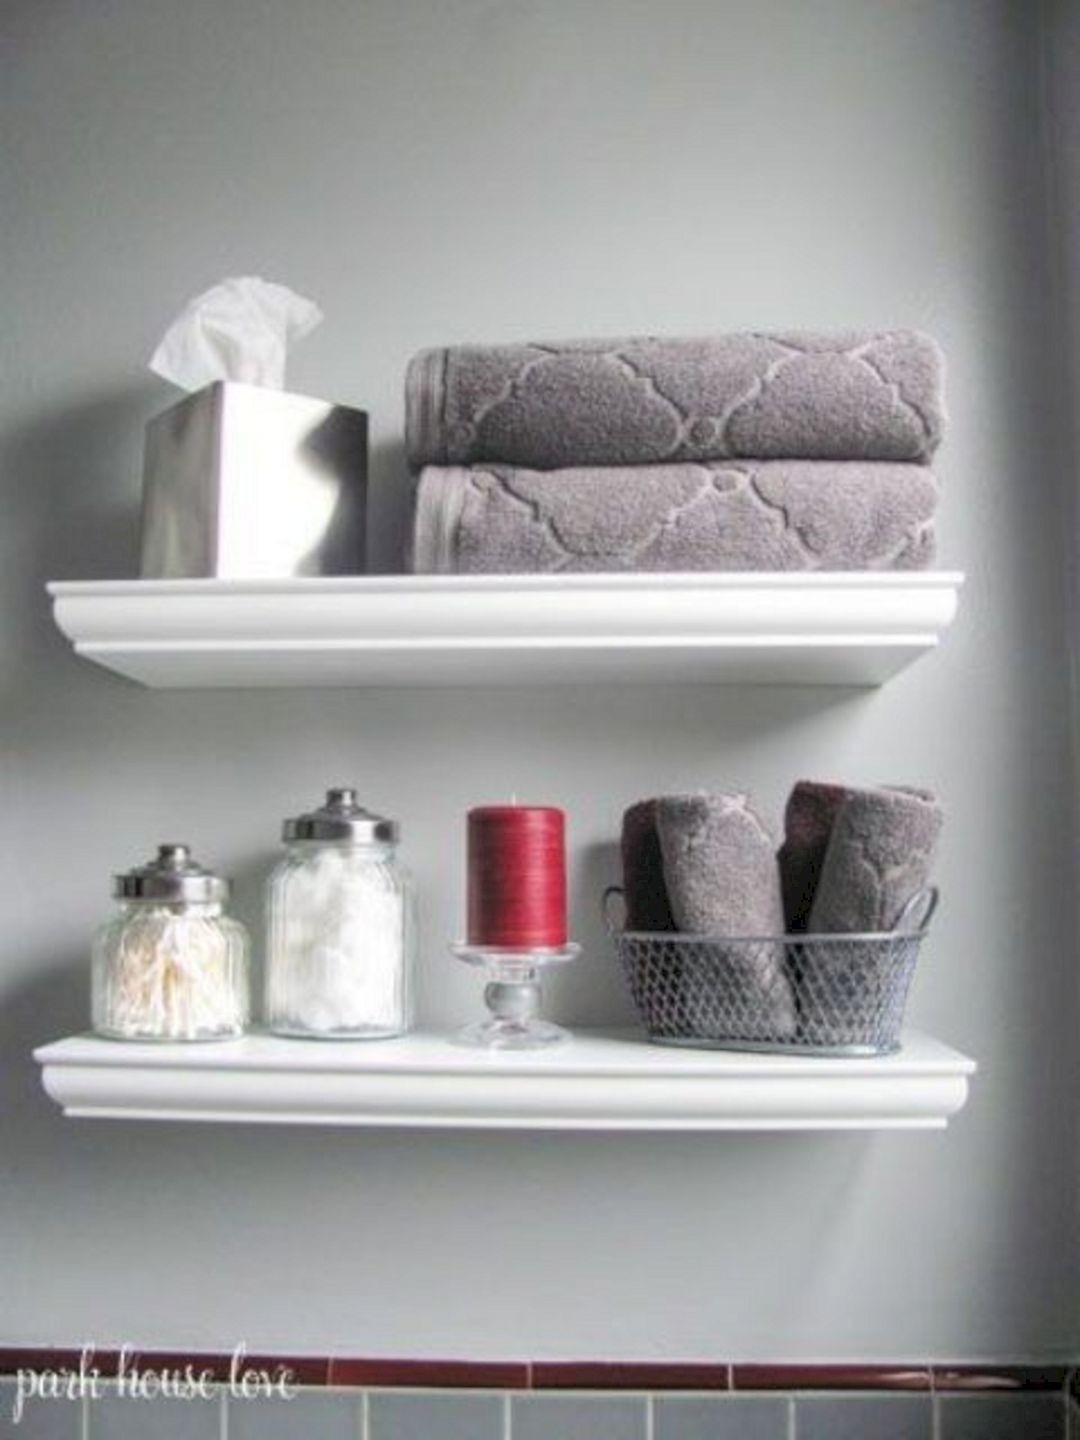 I like the little white shelf in the bathroom acutally